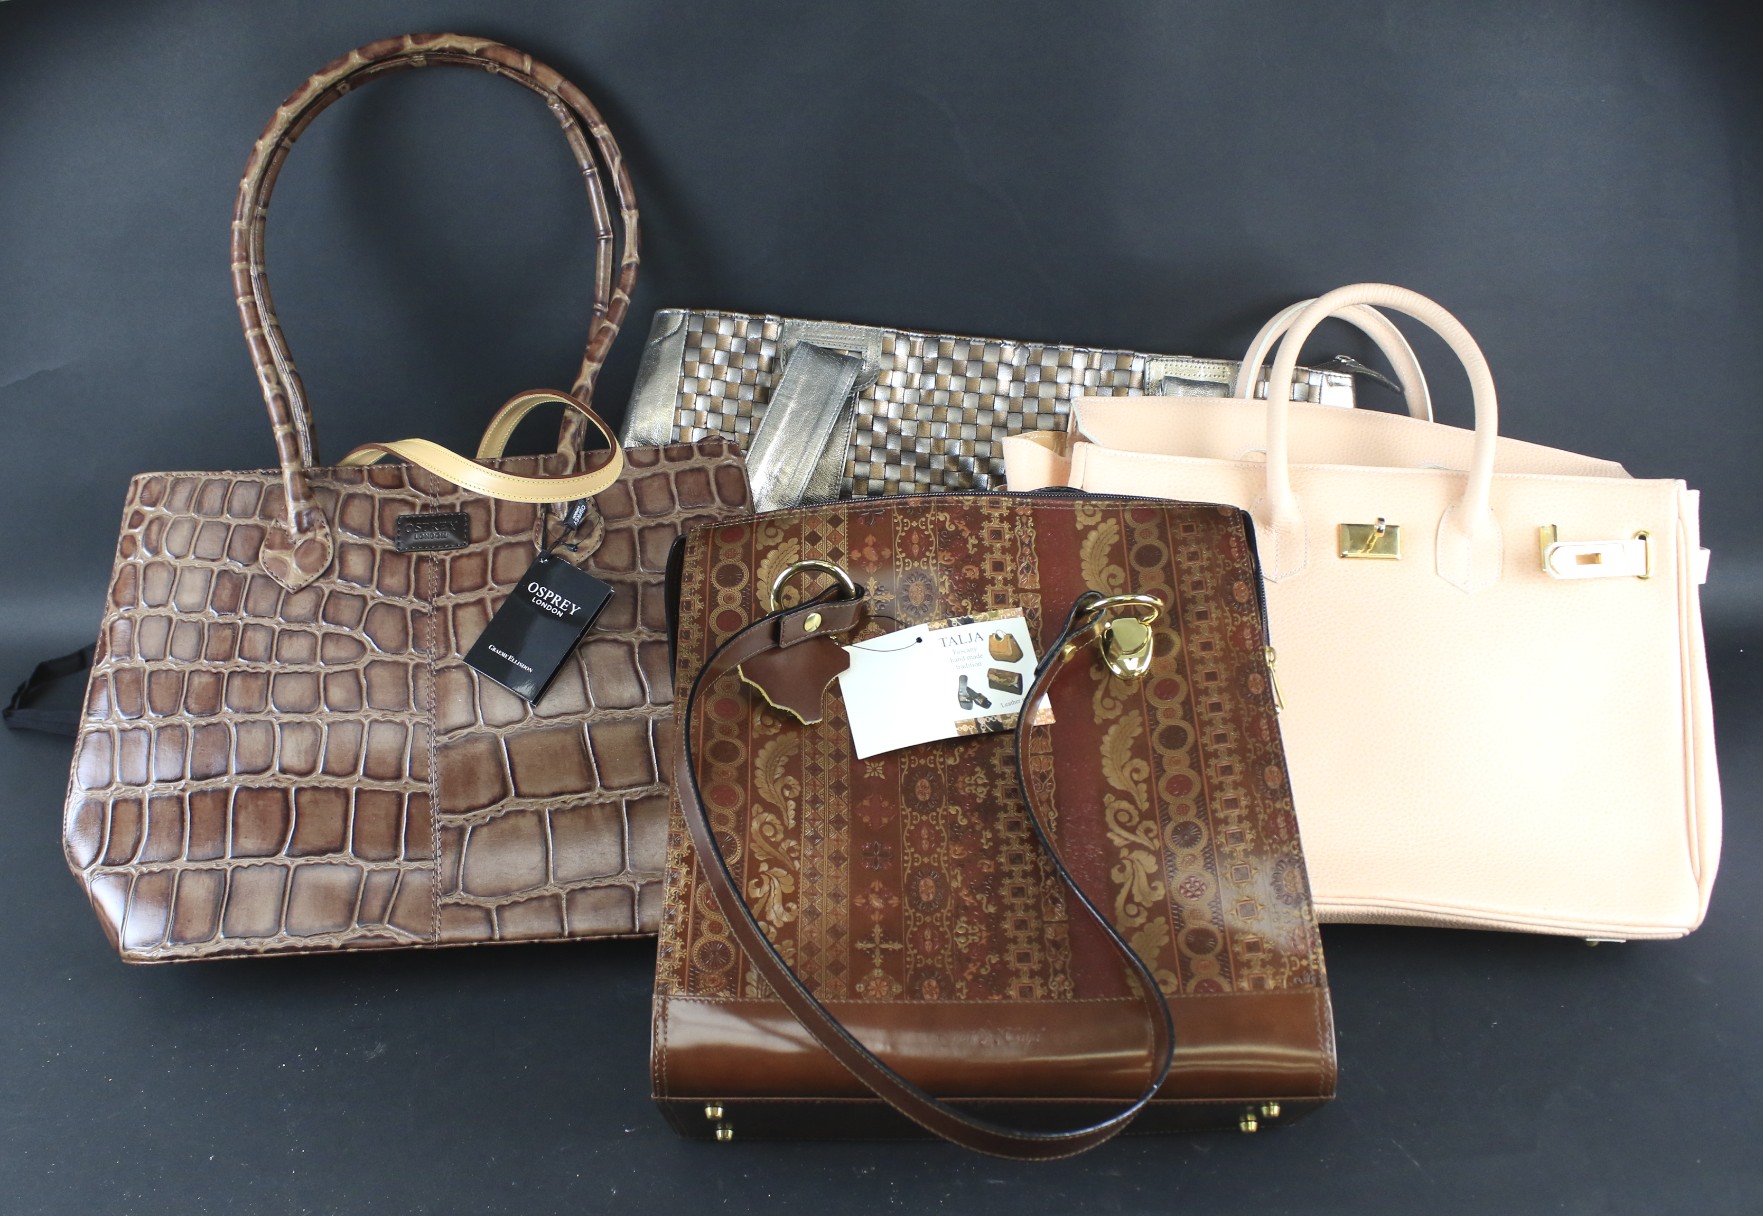 A collection of contemporary handbags.